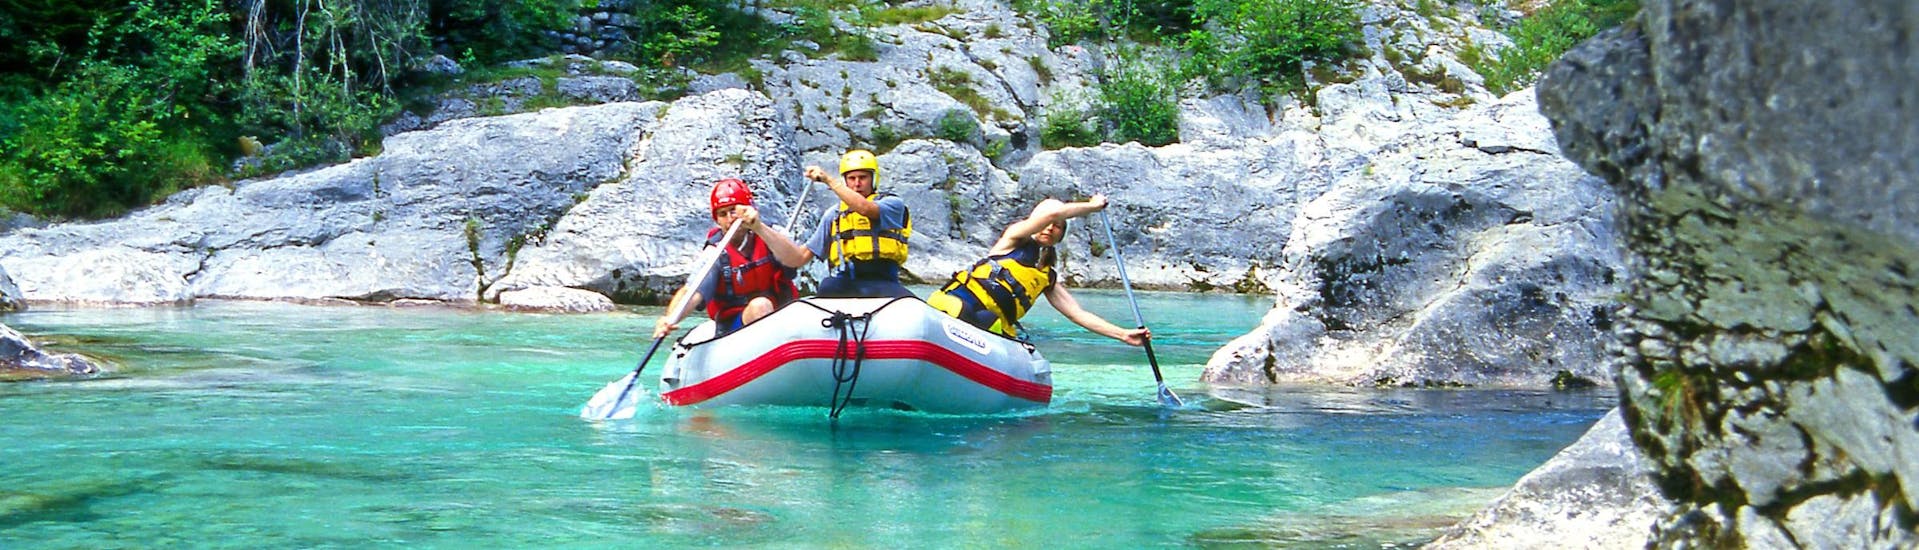 Un groupe de jeunes gens s'amuse lors d'une activité en eau vive dans la destination de rafting et canyoning Vallée de l'Učja. 